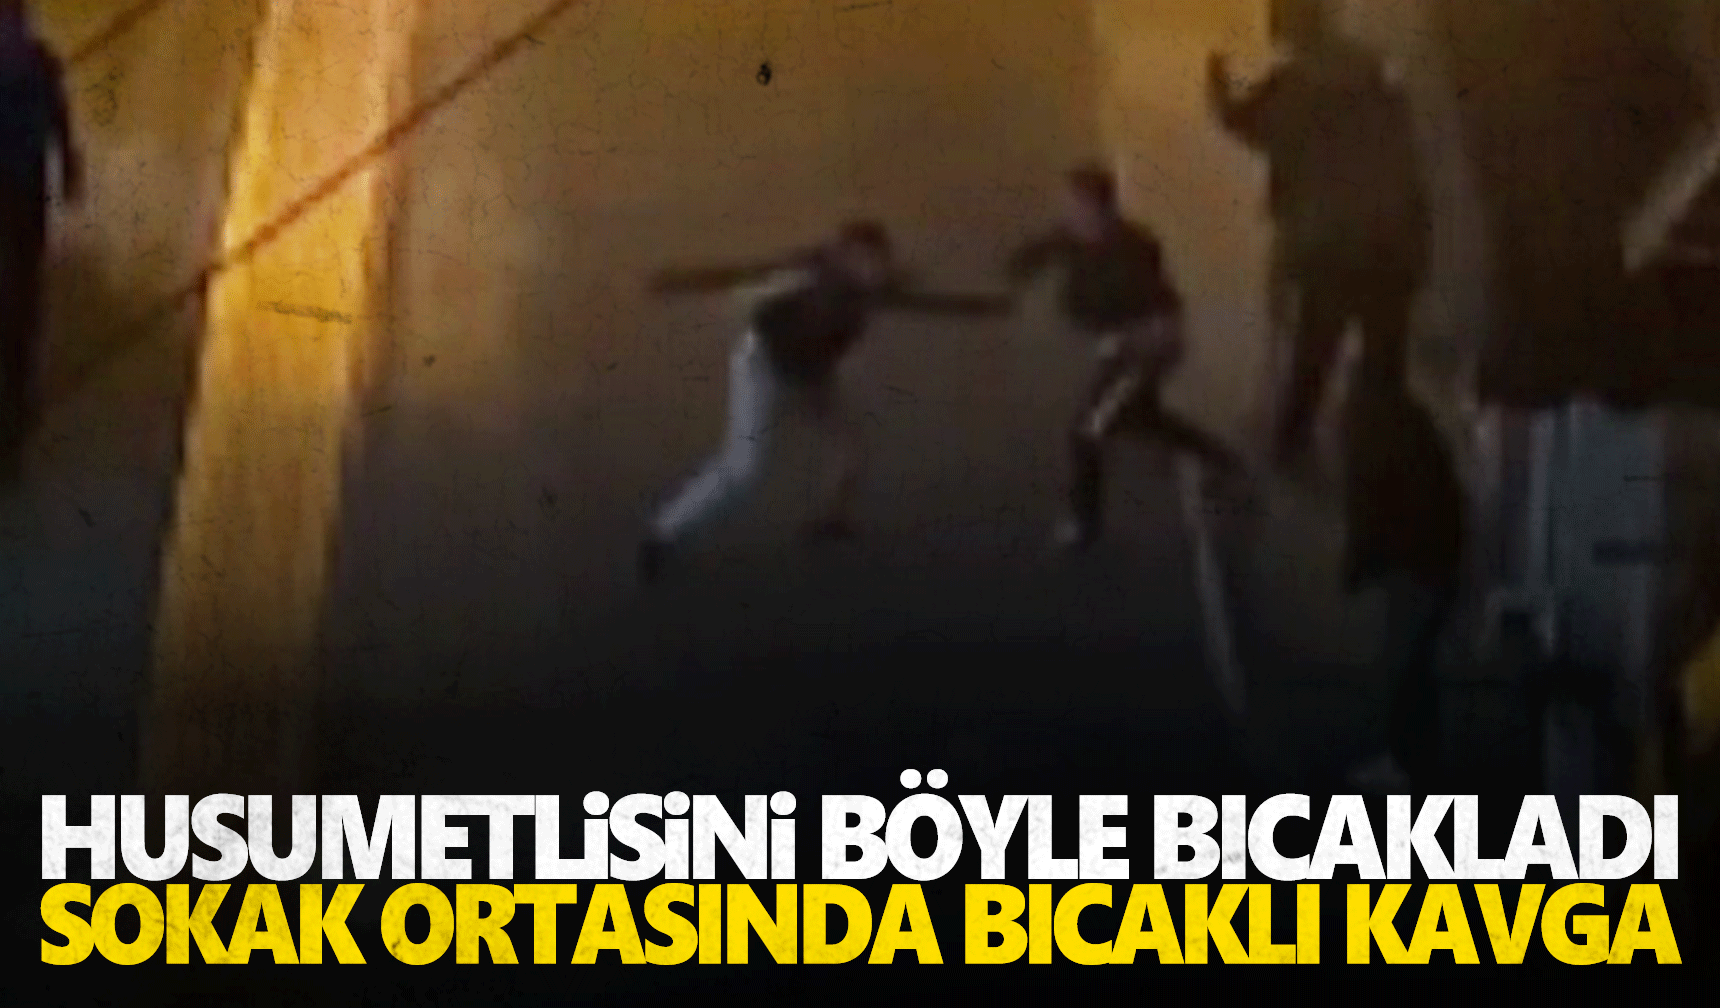 İzmir’deki bıçaklı kavgada yaralılar var